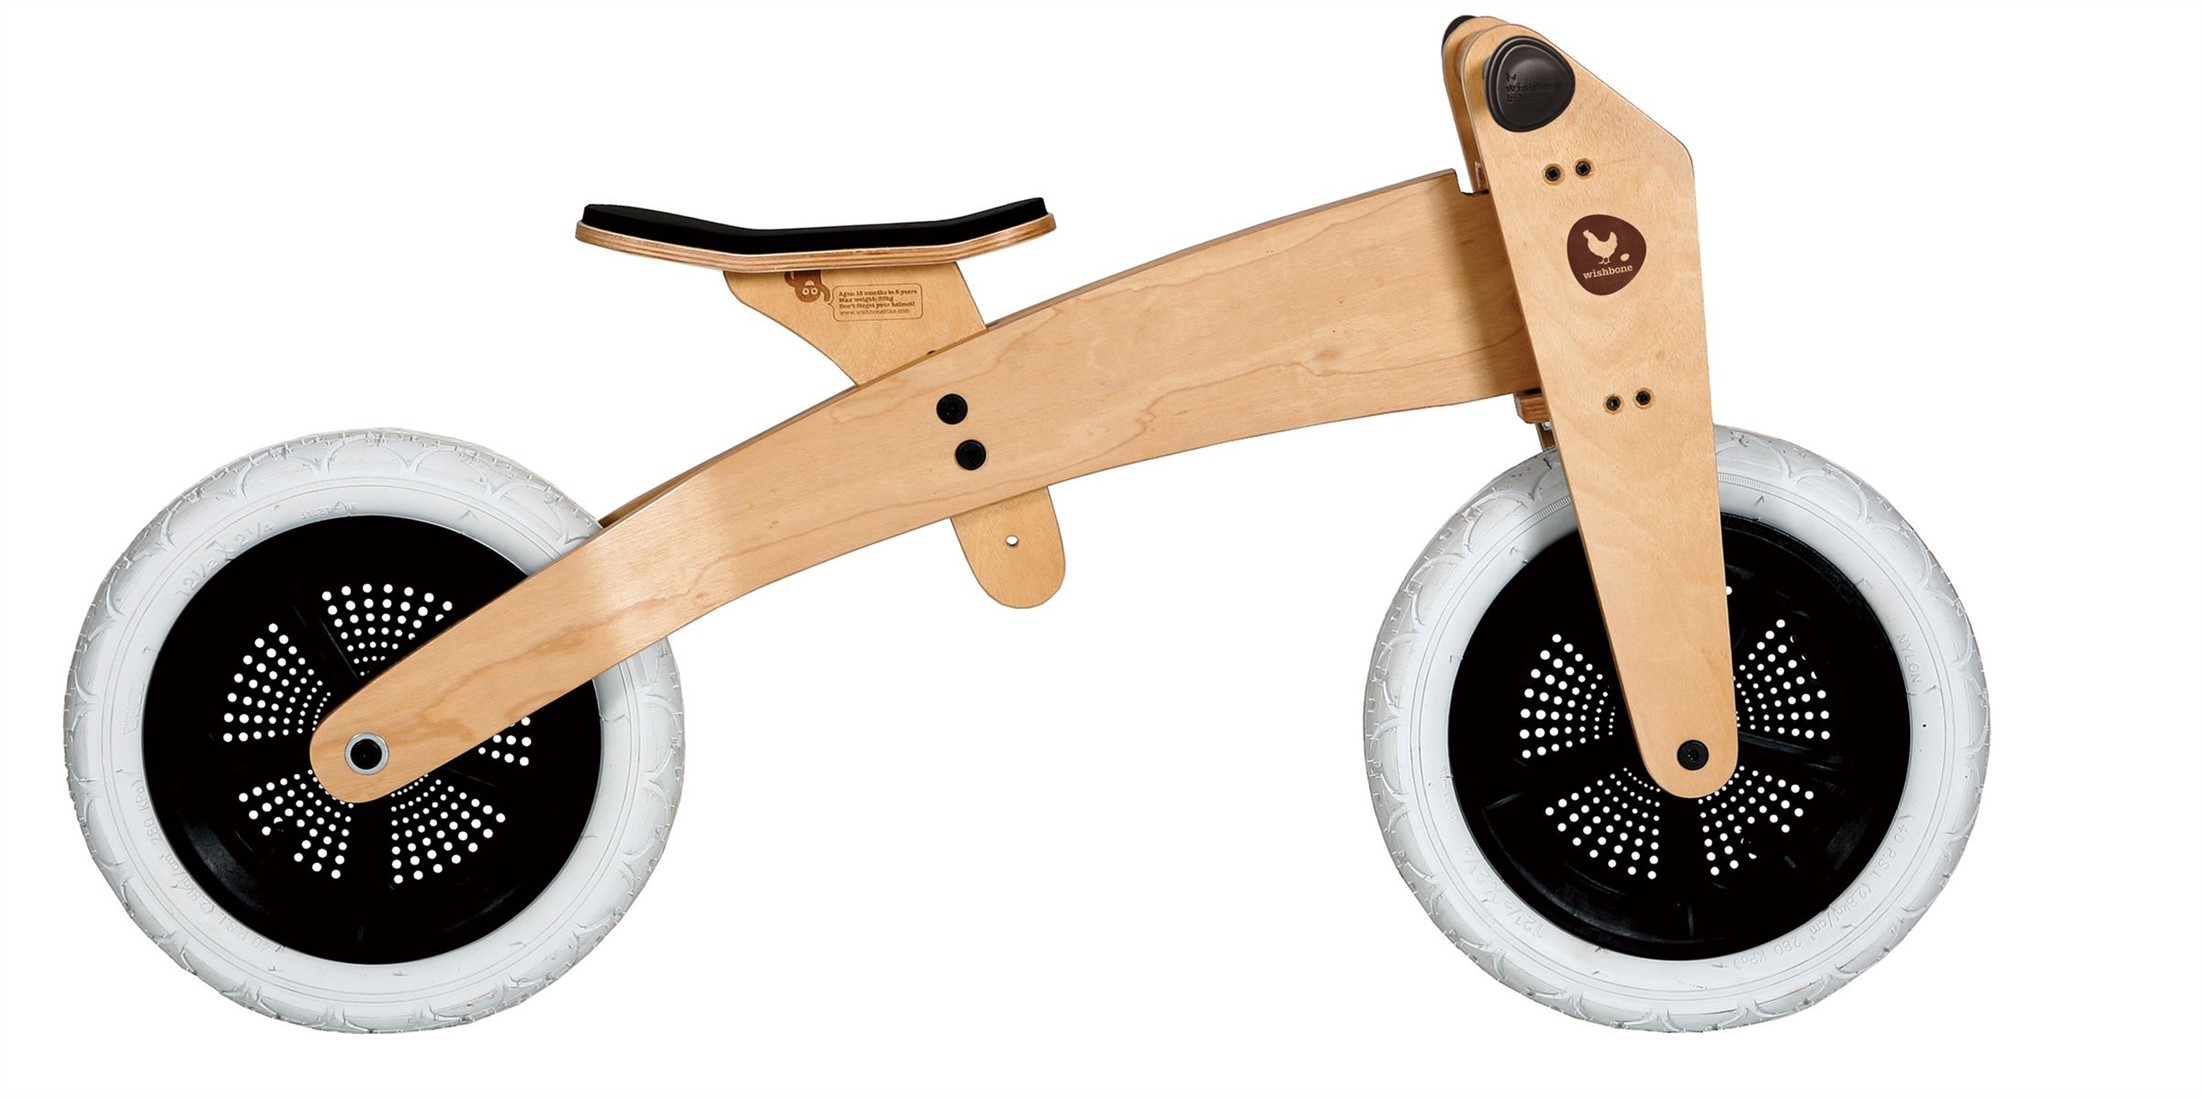 Genre Proficiat Gemiddeld Wishbonebike Original 3-in-1 houten loopfiets - Naturel kopen?